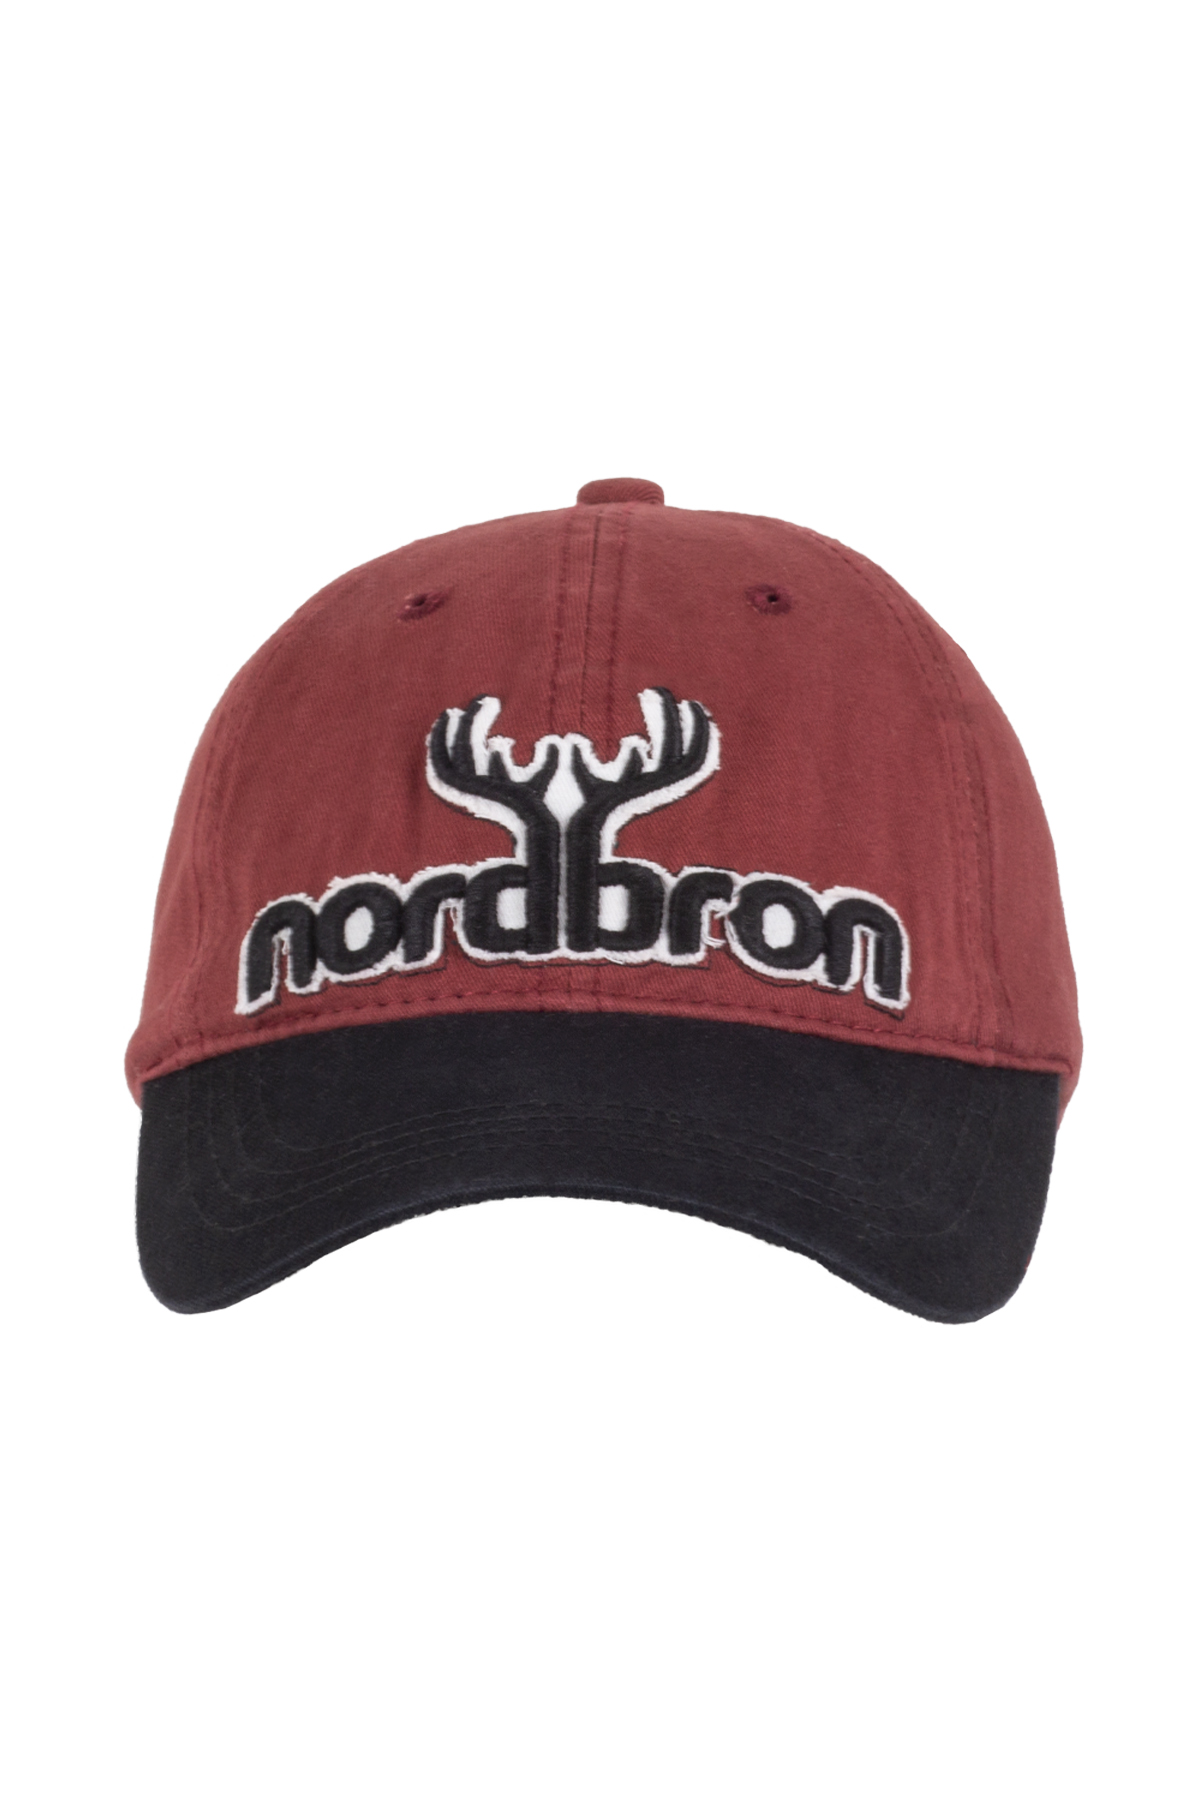 Nordbron  - Geoffrey Bordo Hat